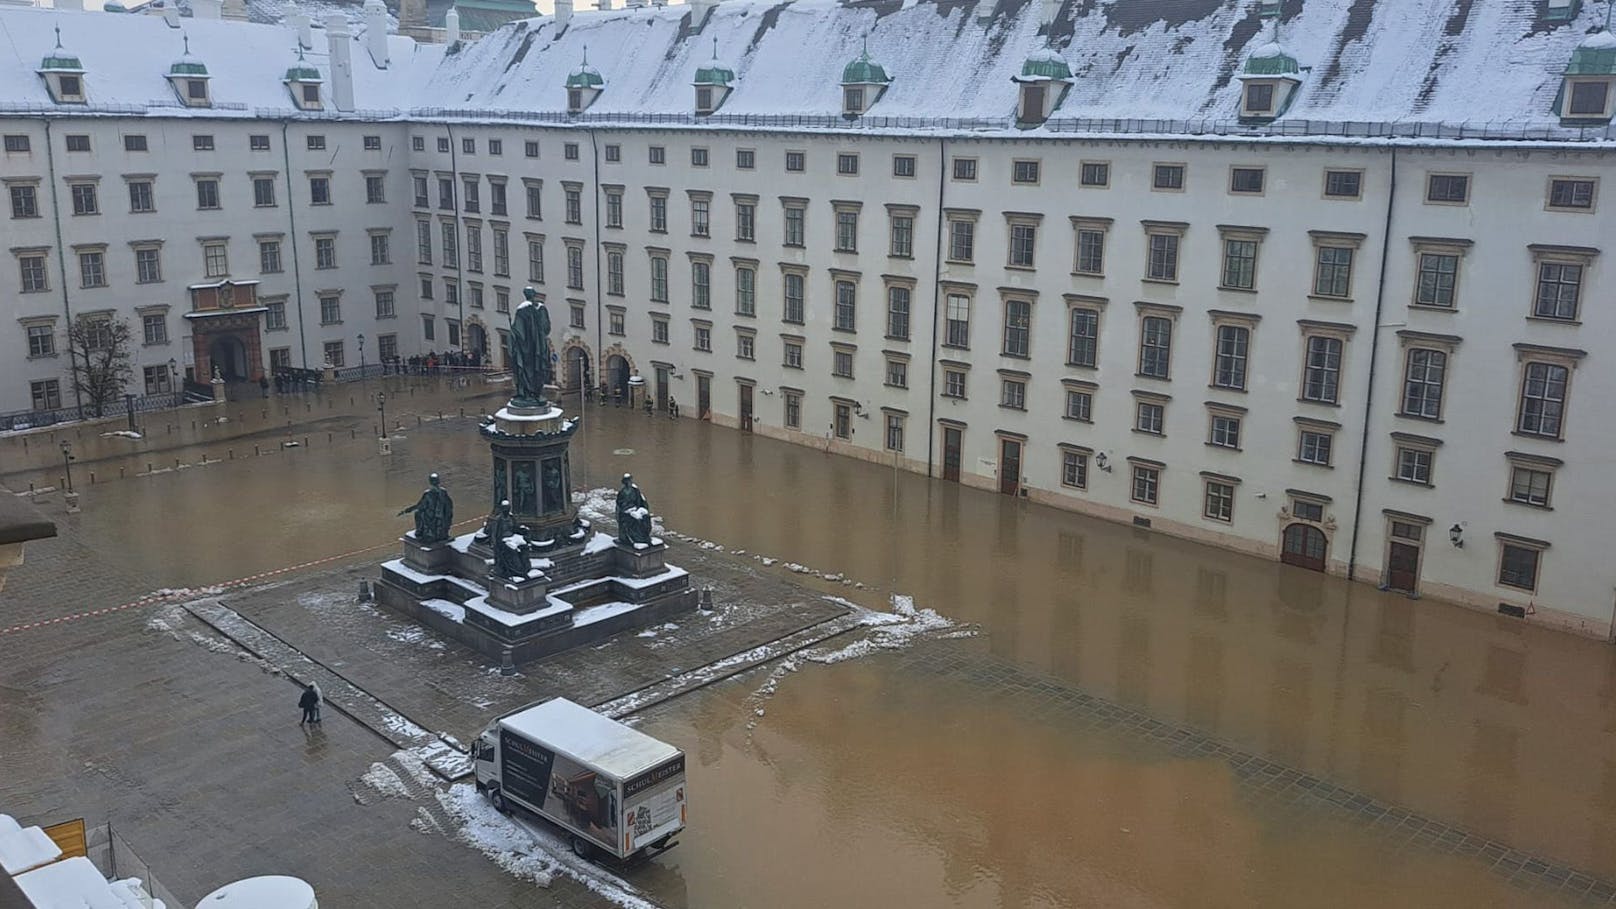 Wasserrohrbruch – Wiener Hofburg komplett unter Wasser